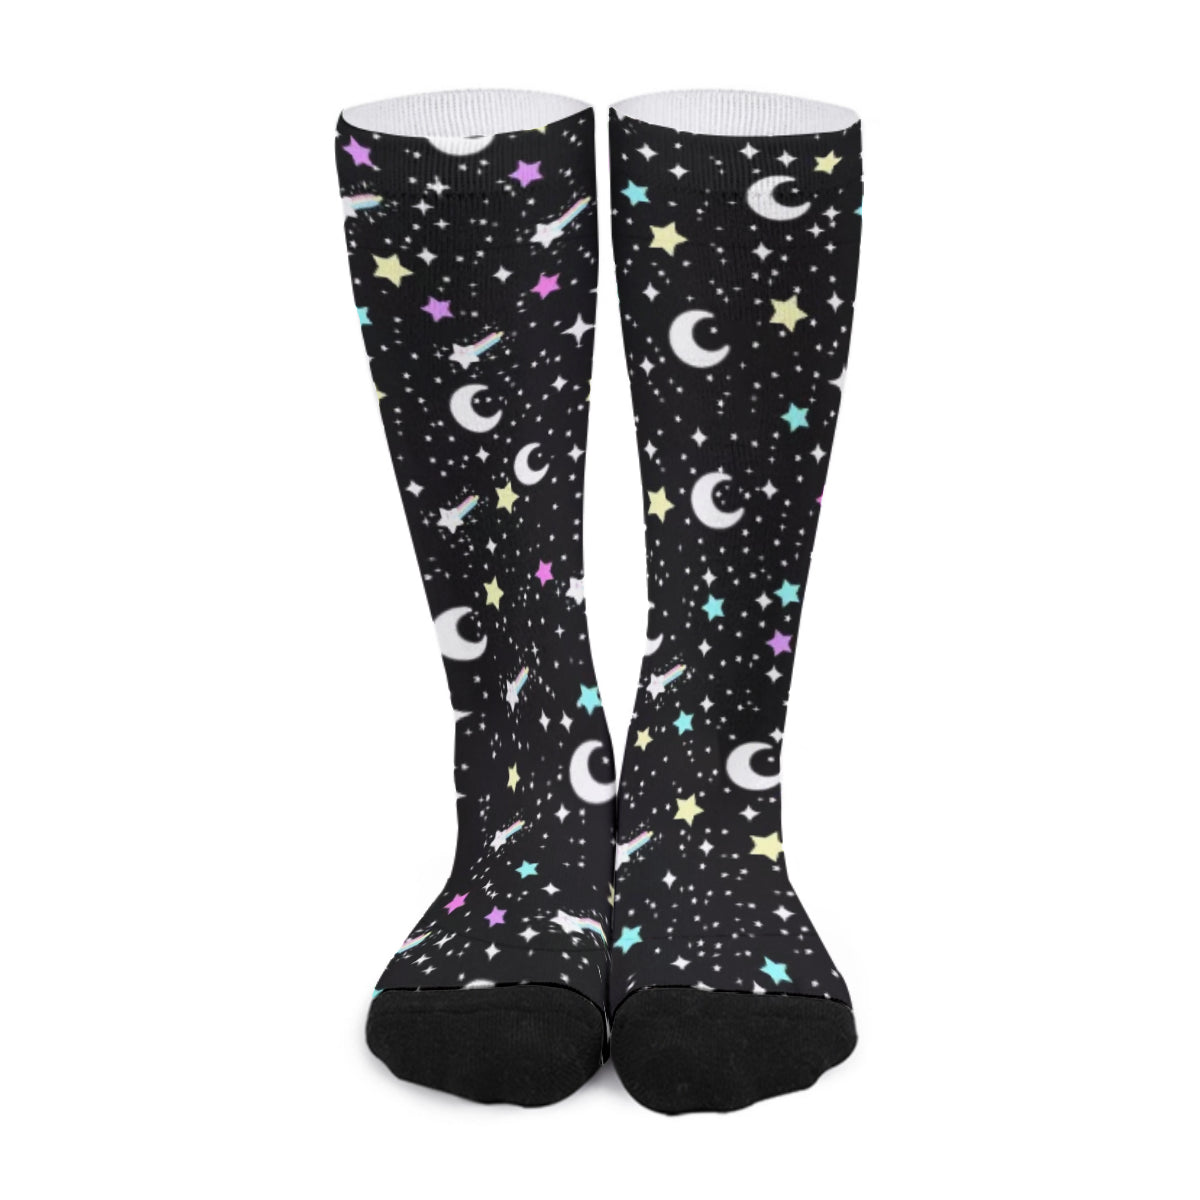 Starry Glitter Black Unisex Crew Socks